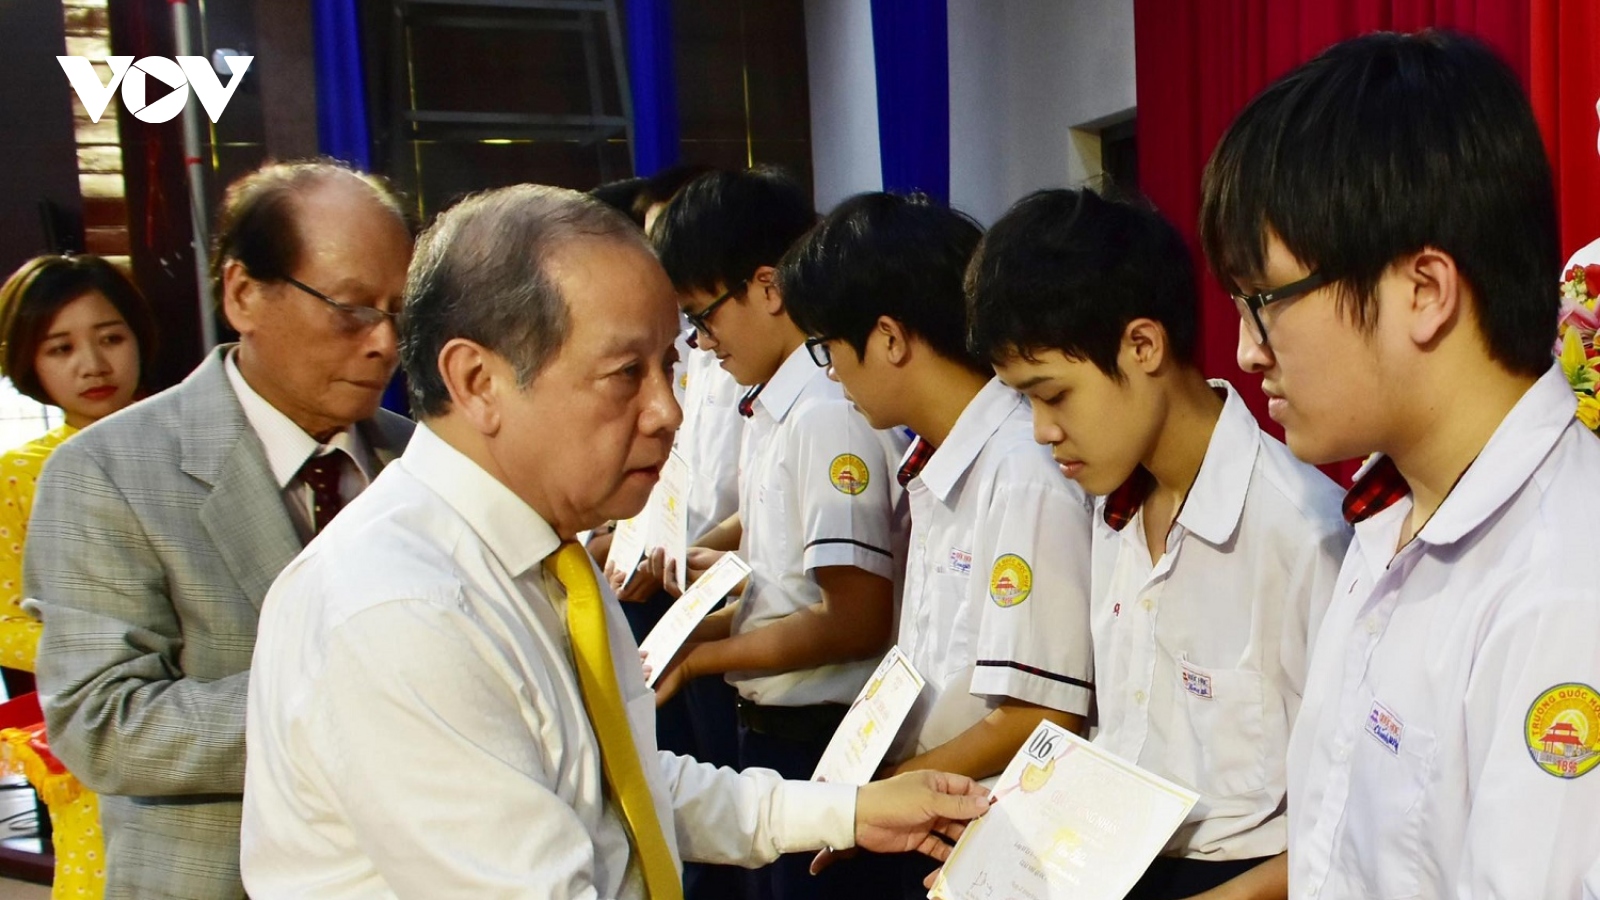 Hơn 200 học sinh, sinh viên xuất sắc nhận học bổng Vallet tại Thừa Thiên Huế